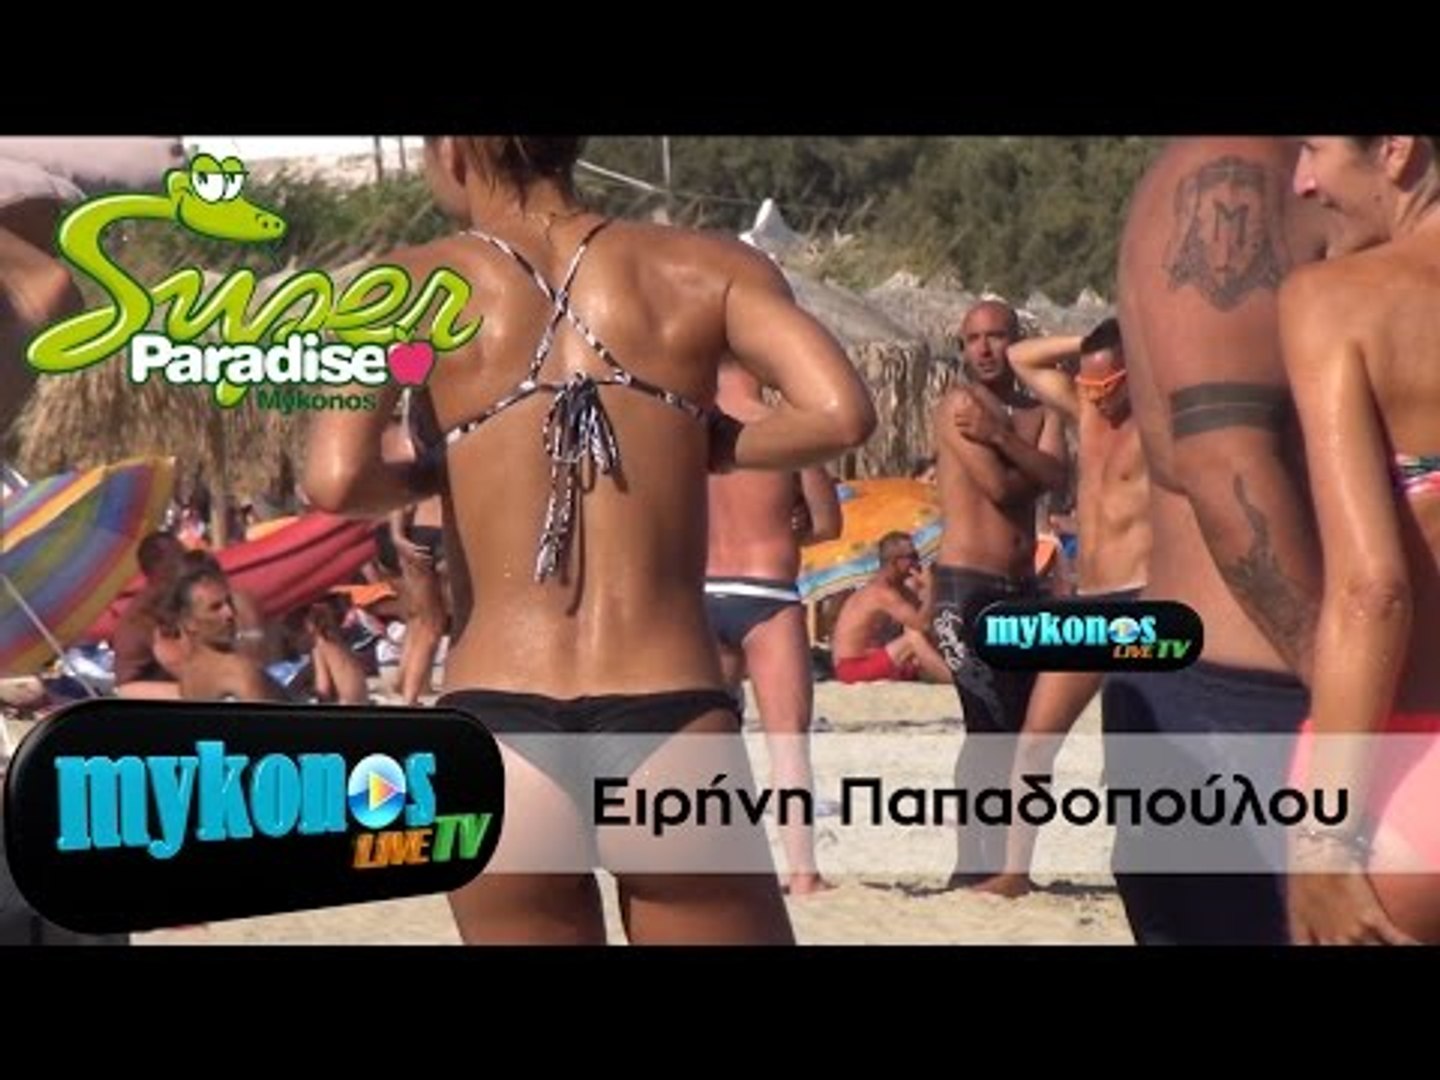 Η Ειρήνη Παπαδοπούλου προκαλεί κόμπλεξ στην παραλία με την κορμάρα της -  video Dailymotion